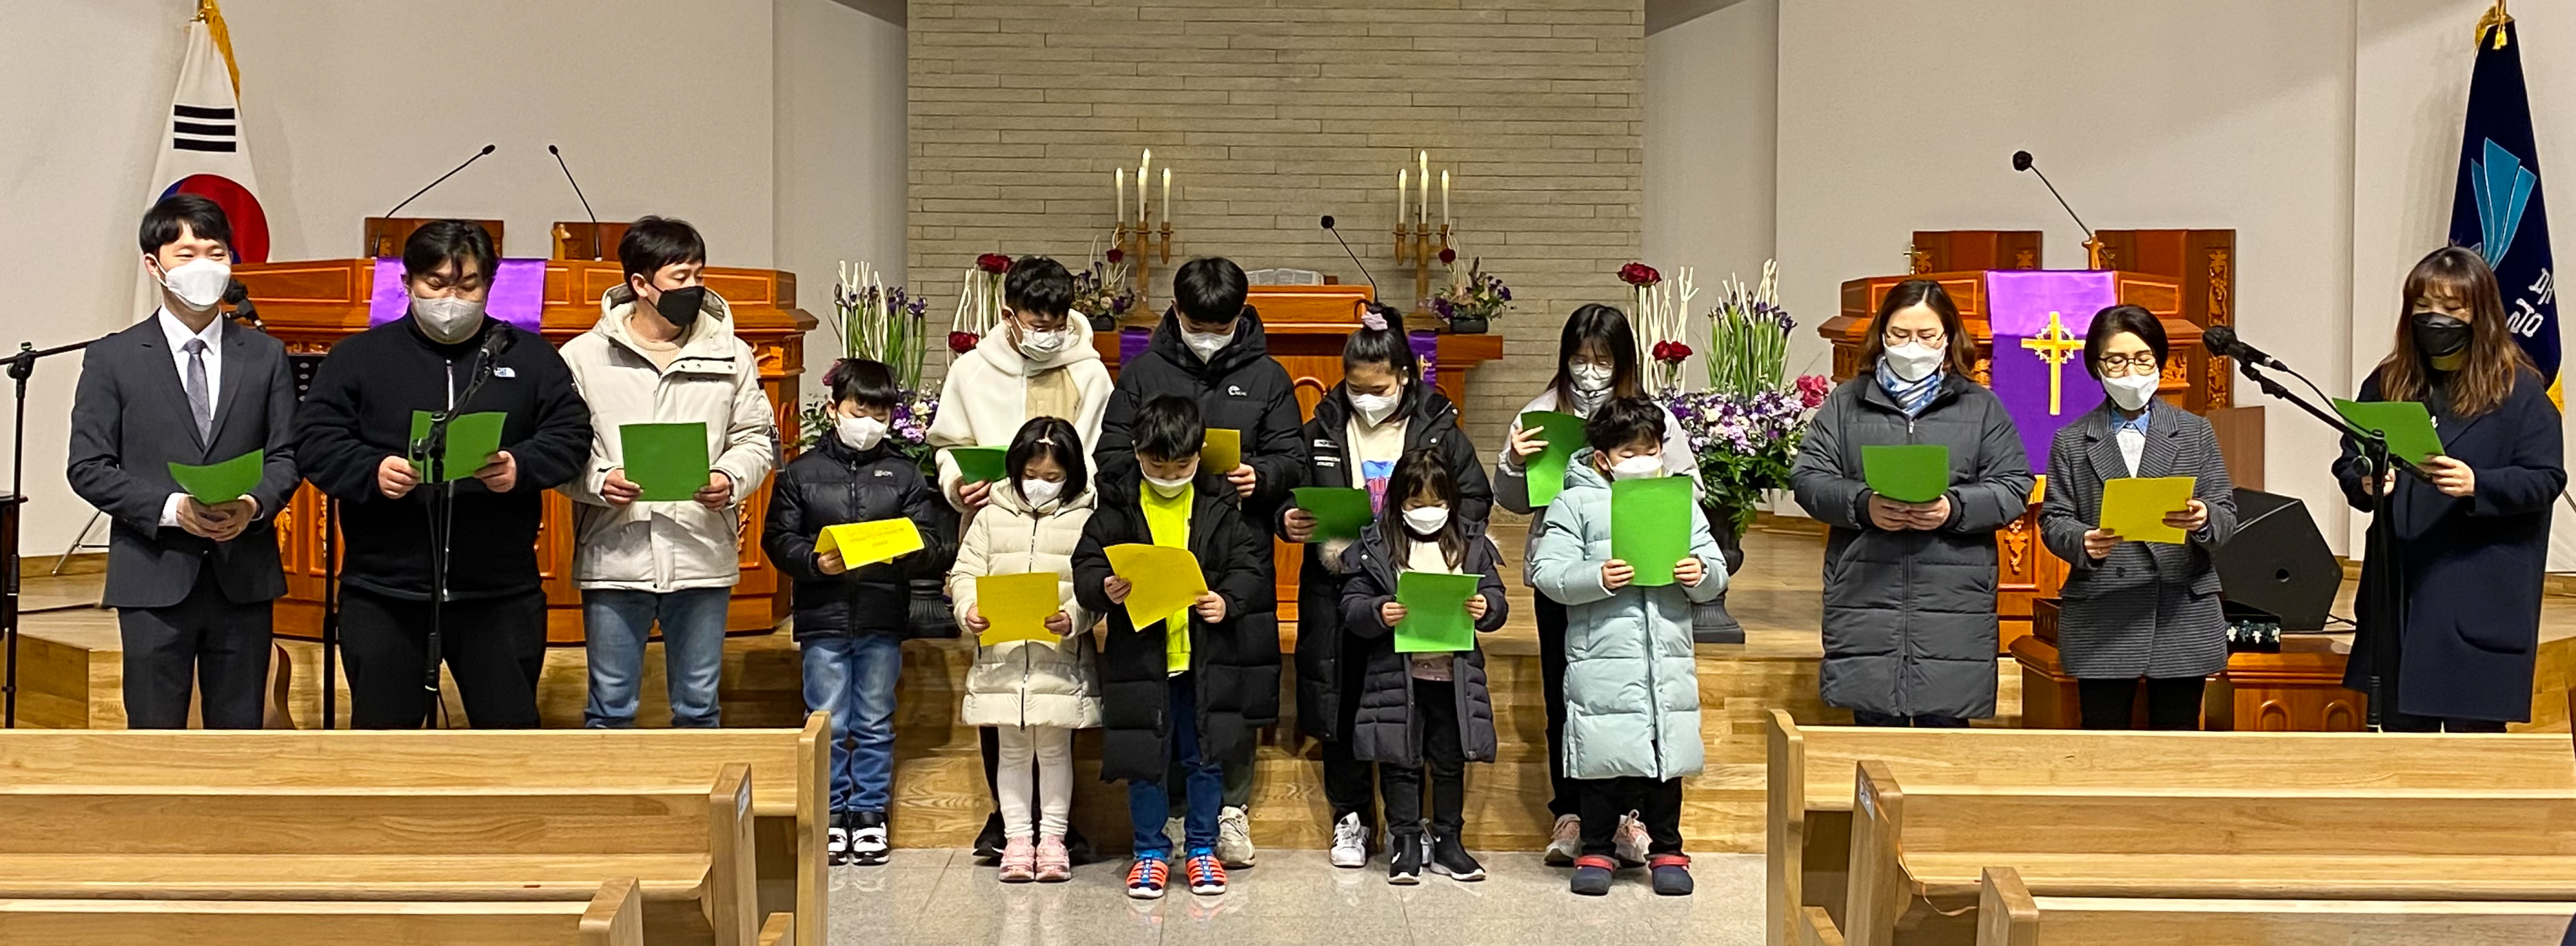 [믿음의 현장] 광림북교회 새학기 기도회 - 나라와 가정과 자녀를 위한 기도회